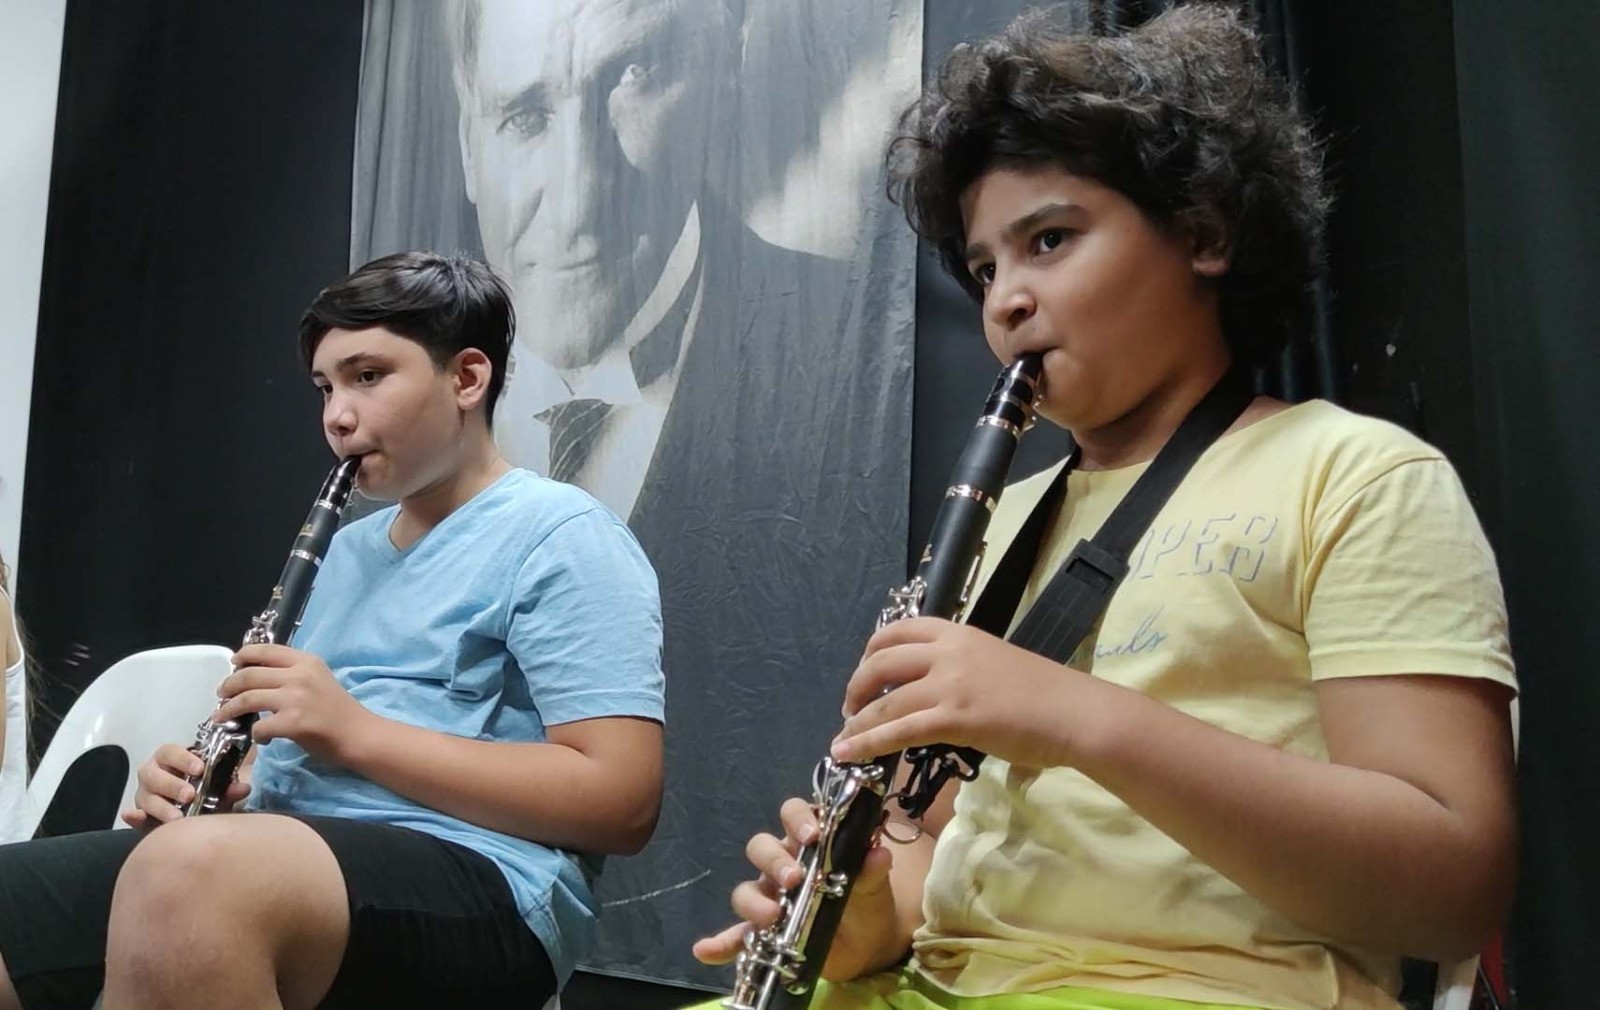 Kemer Belediyesi bünyesinde kurulan Çocuk ve Gençlik Bandosu Orkestra seviyesine geldi